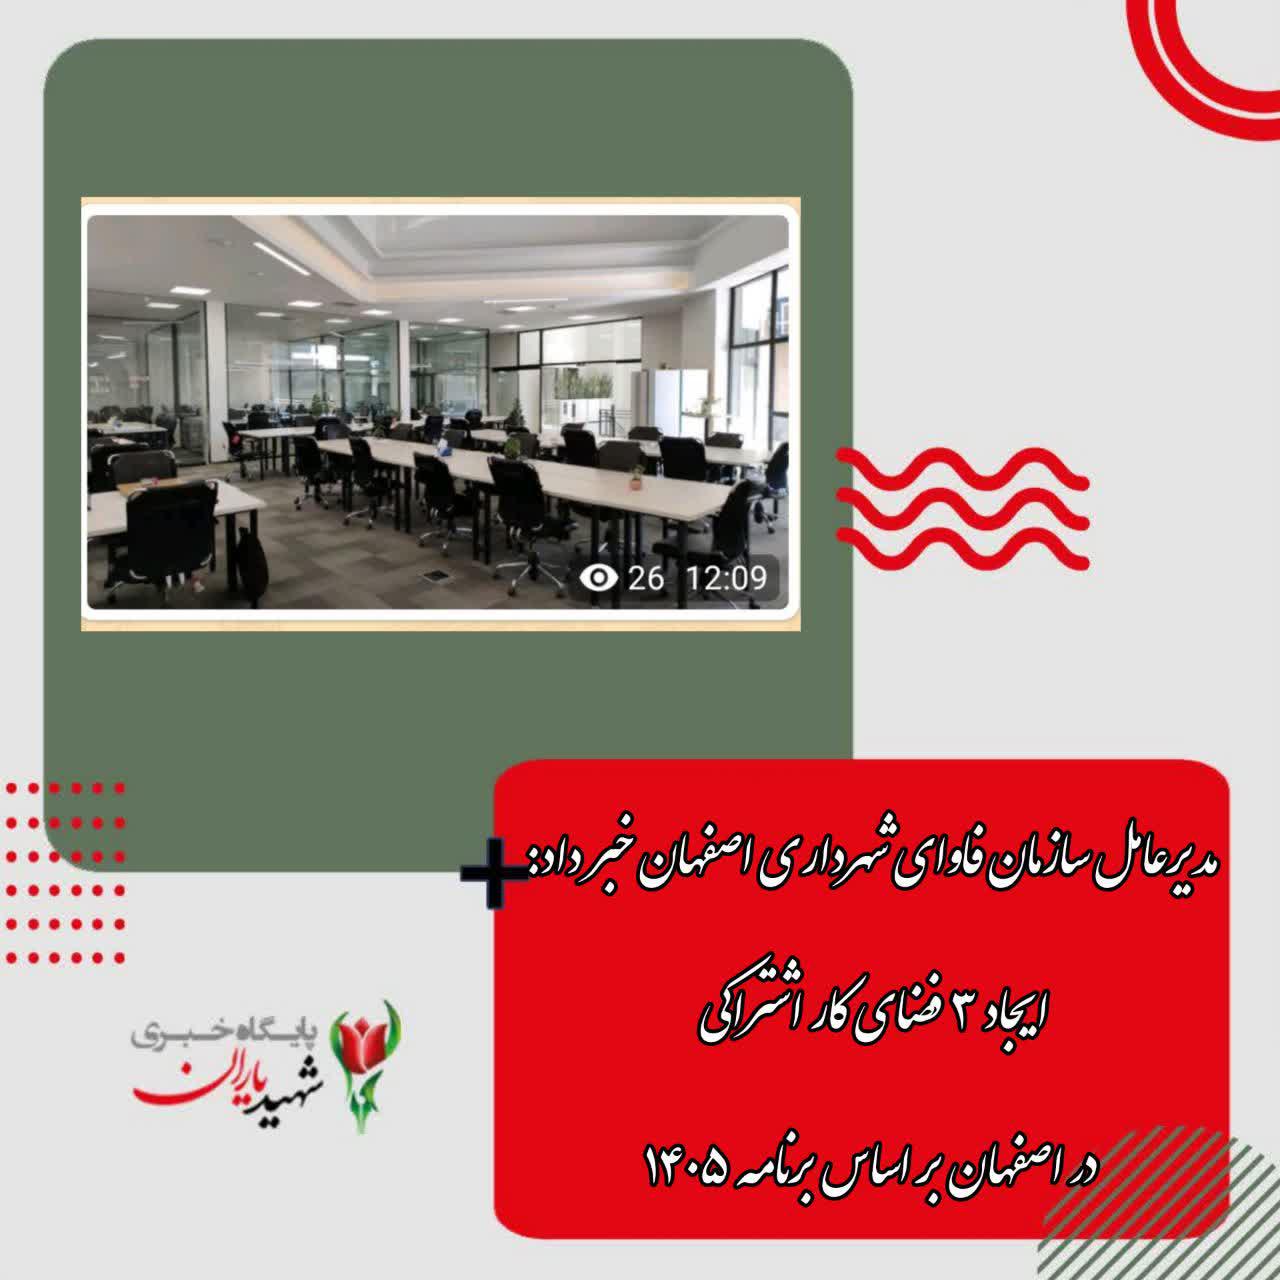 مدیرعامل سازمان فاوای شهرداری اصفهان خبر داد: ایجاد ۳ فضای کار اشتراکی در اصفهان بر اساس برنامه ۱۴۰۵